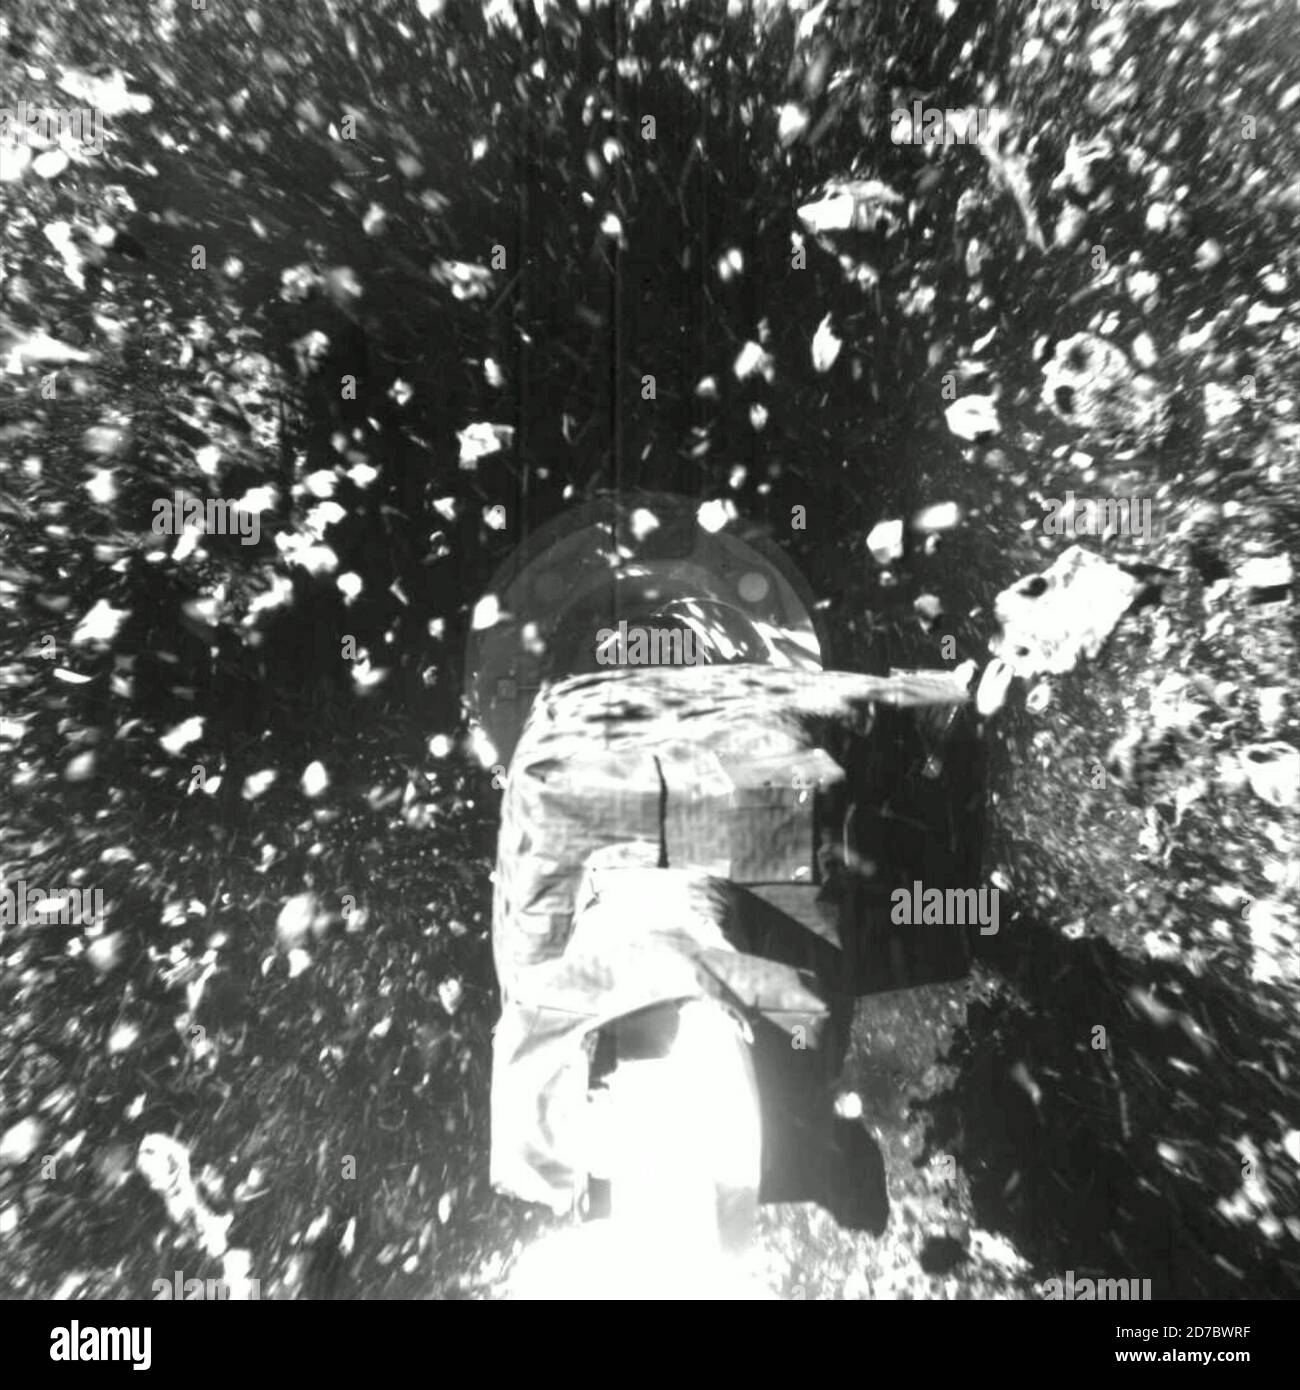 Capturée le 20 octobre 2020, lors de l'événement de collecte d'échantillons Touch-and-Go (TAG) de la mission OSIRIS, cette série d'images montre le champ de vision de l'imageur SamCam à mesure que le vaisseau spatial de la NASA s'approche et touche la surface de l'astéroïde Bennu, à plus de 200 millions de miles (321 millions de km) de la Terre. L'événement d'échantillonnage a amené le vaisseau spatial au site d'échantillonnage Nightingale, en le touchant à moins d'un mètre (trois pieds) de l'emplacement ciblé. Les données préliminaires montrent que la tête d'échantillonnage d'un pied de large (0.3 mètres de large) a touché la surface de Bennu pendant environ 6 secondes, après quoi l'engin spatial a touché Banque D'Images